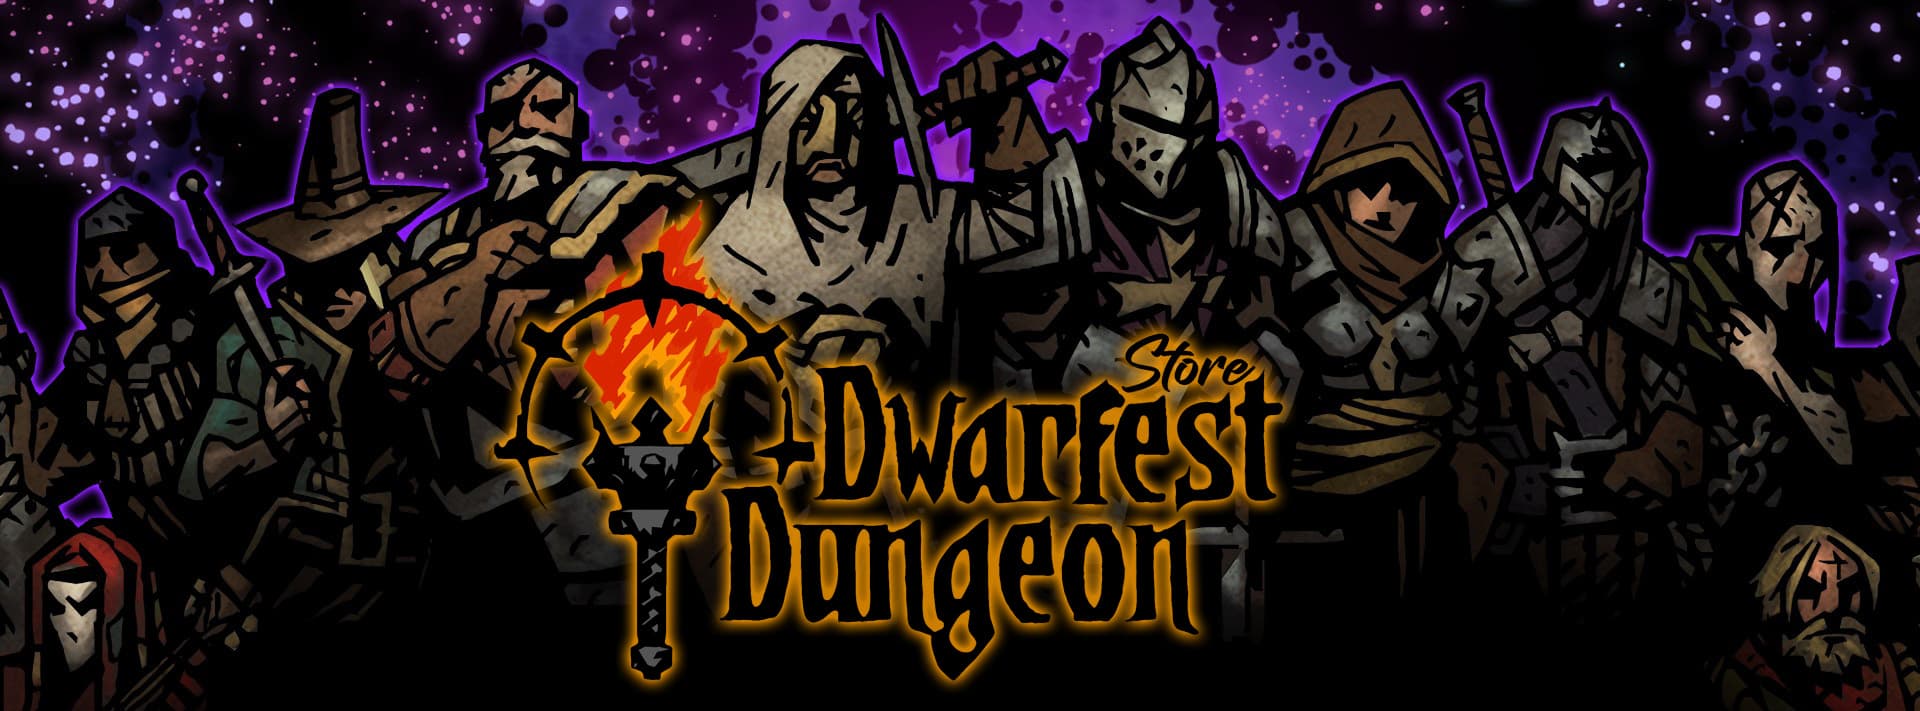 Darkest Dungeon Store Banner